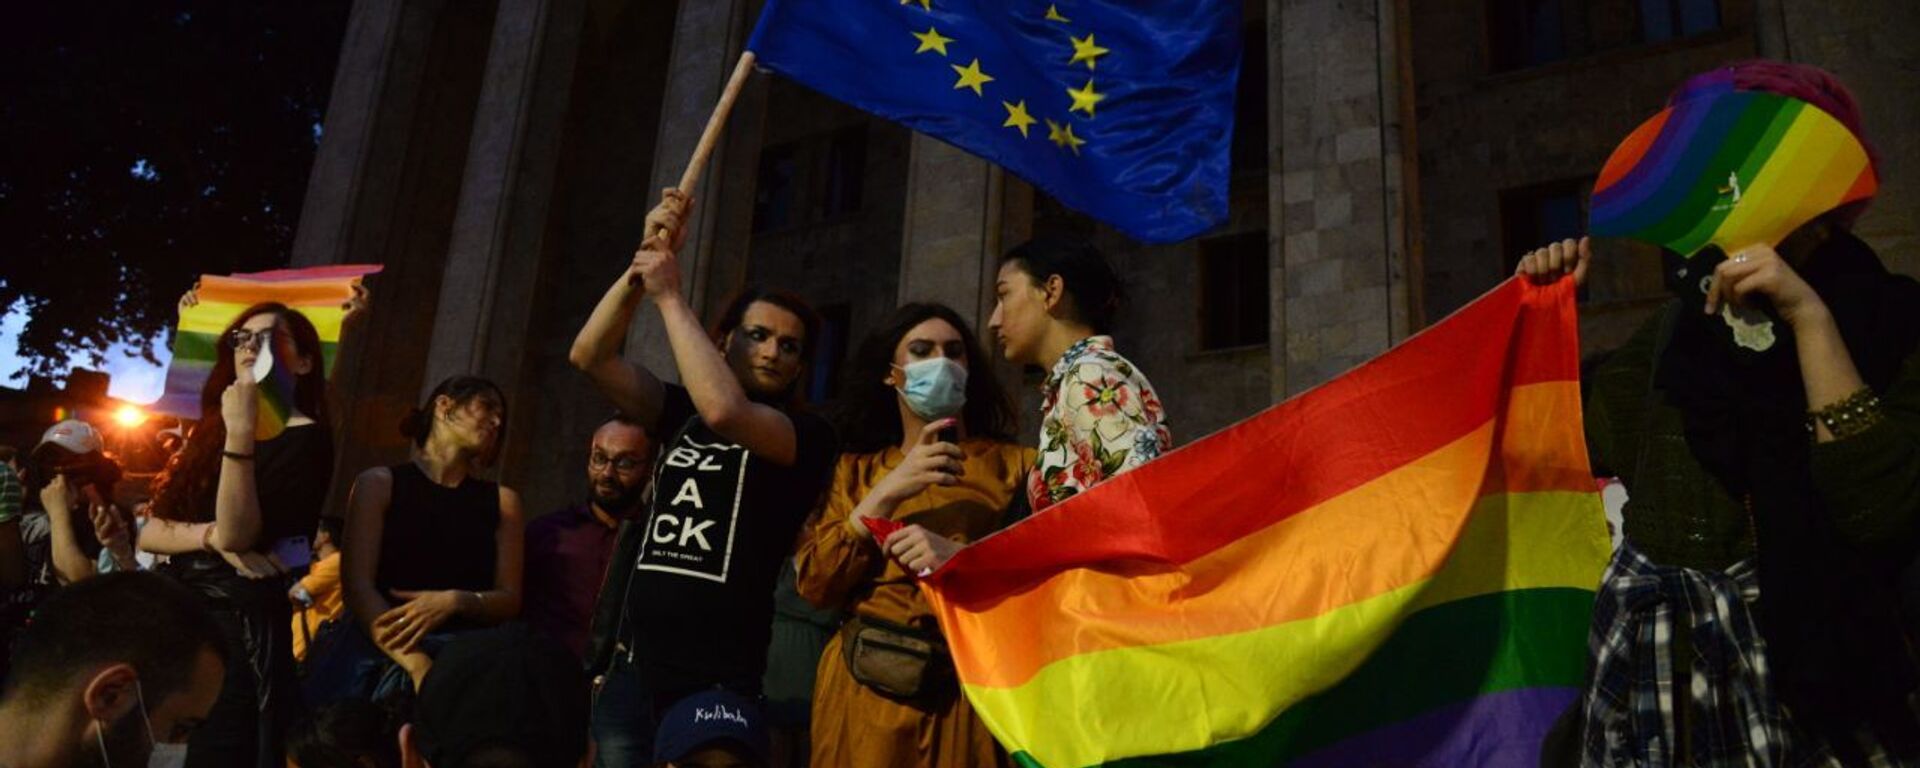 Противостояние у парламента Грузии 6 июля 2021 года. Сторонники ЛГБТ на акции молчания - Sputnik Грузия, 1920, 07.07.2021